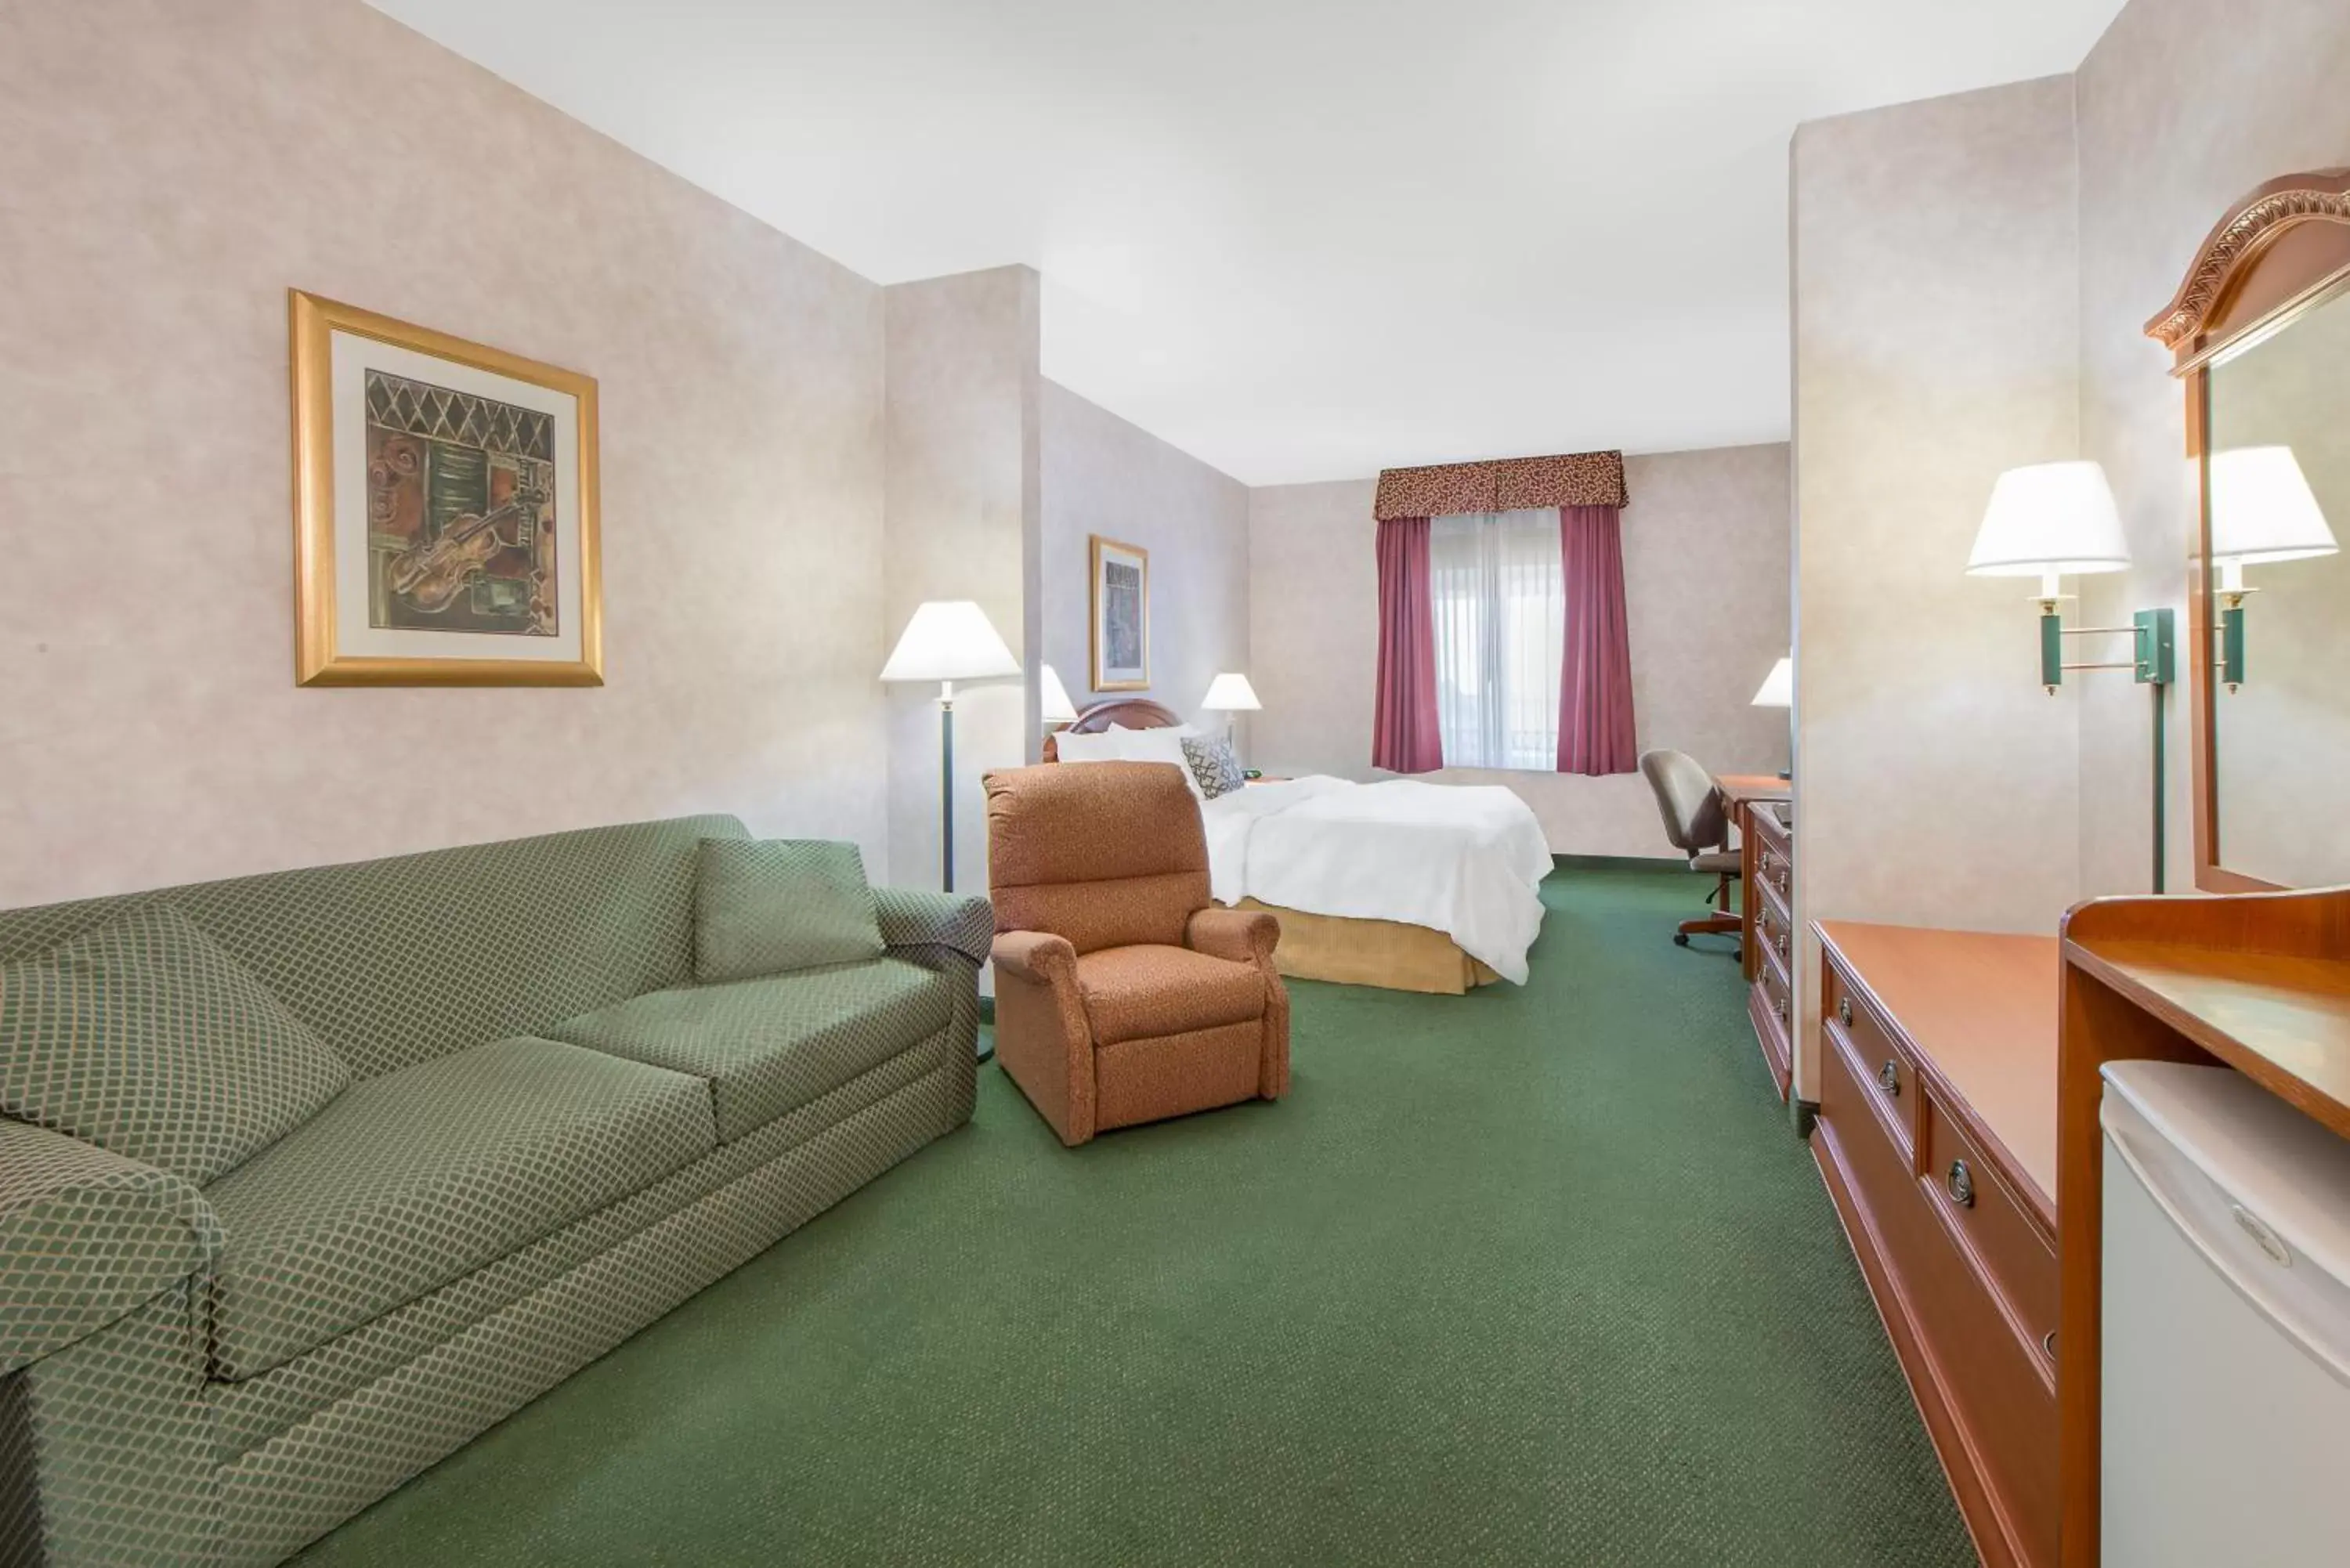 Bedroom, Room Photo in Days Inn & Suites by Wyndham Dumas